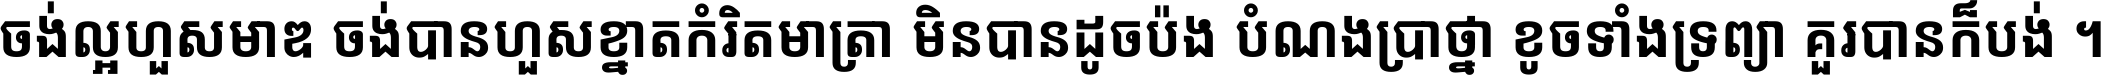 Noto Sans Khmer Condensed Bold